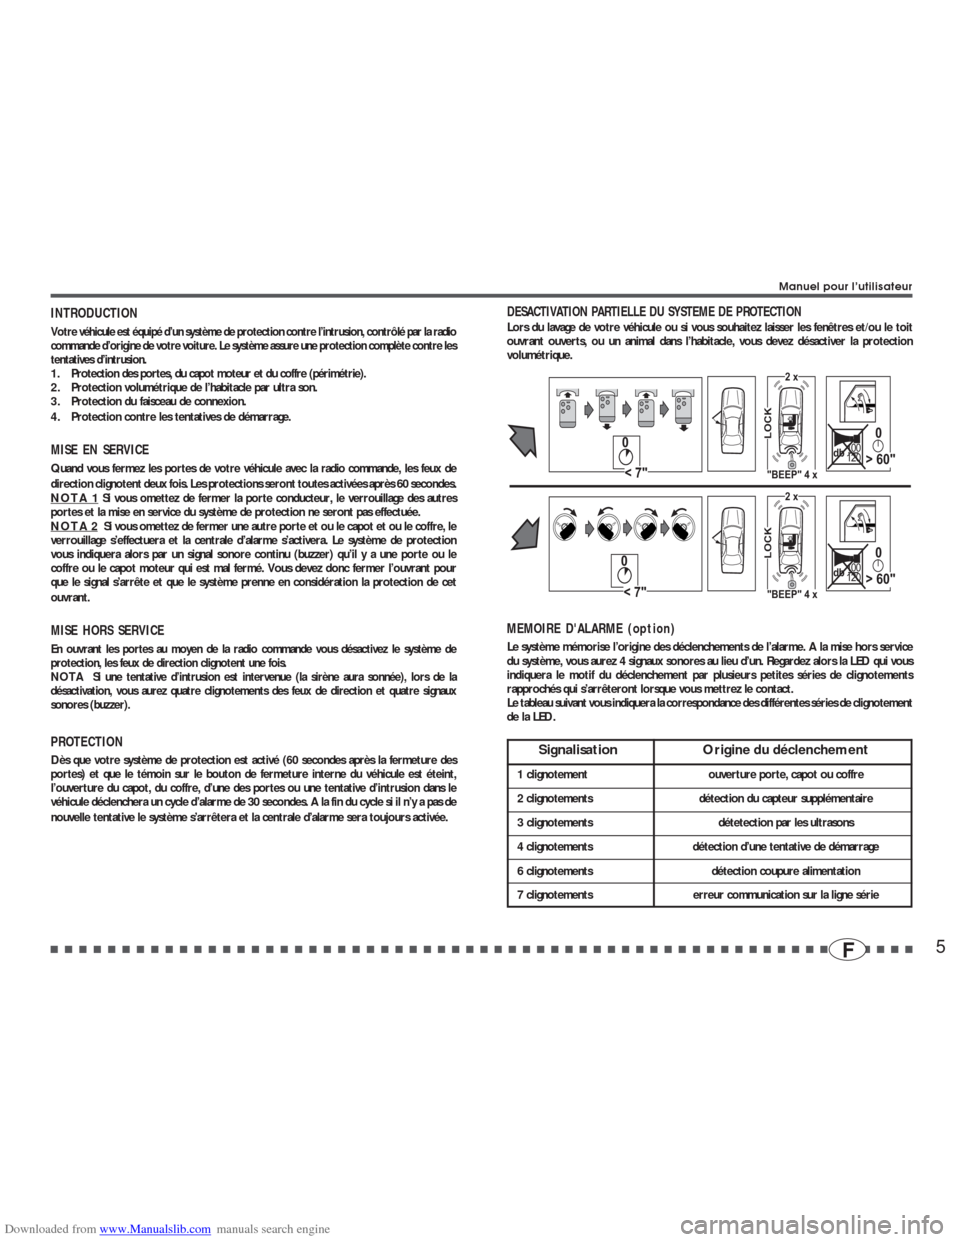 RENAULT CLIO 2002 X65 / 2.G Alarm 7895-7897 User Manual Downloaded from www.Manualslib.com manuals search engine 5F
INTRODUCTIONVotre véhicule est équipé d’un système de protection contre l’intrusion, contrôlé par la radio
commande d’origine de